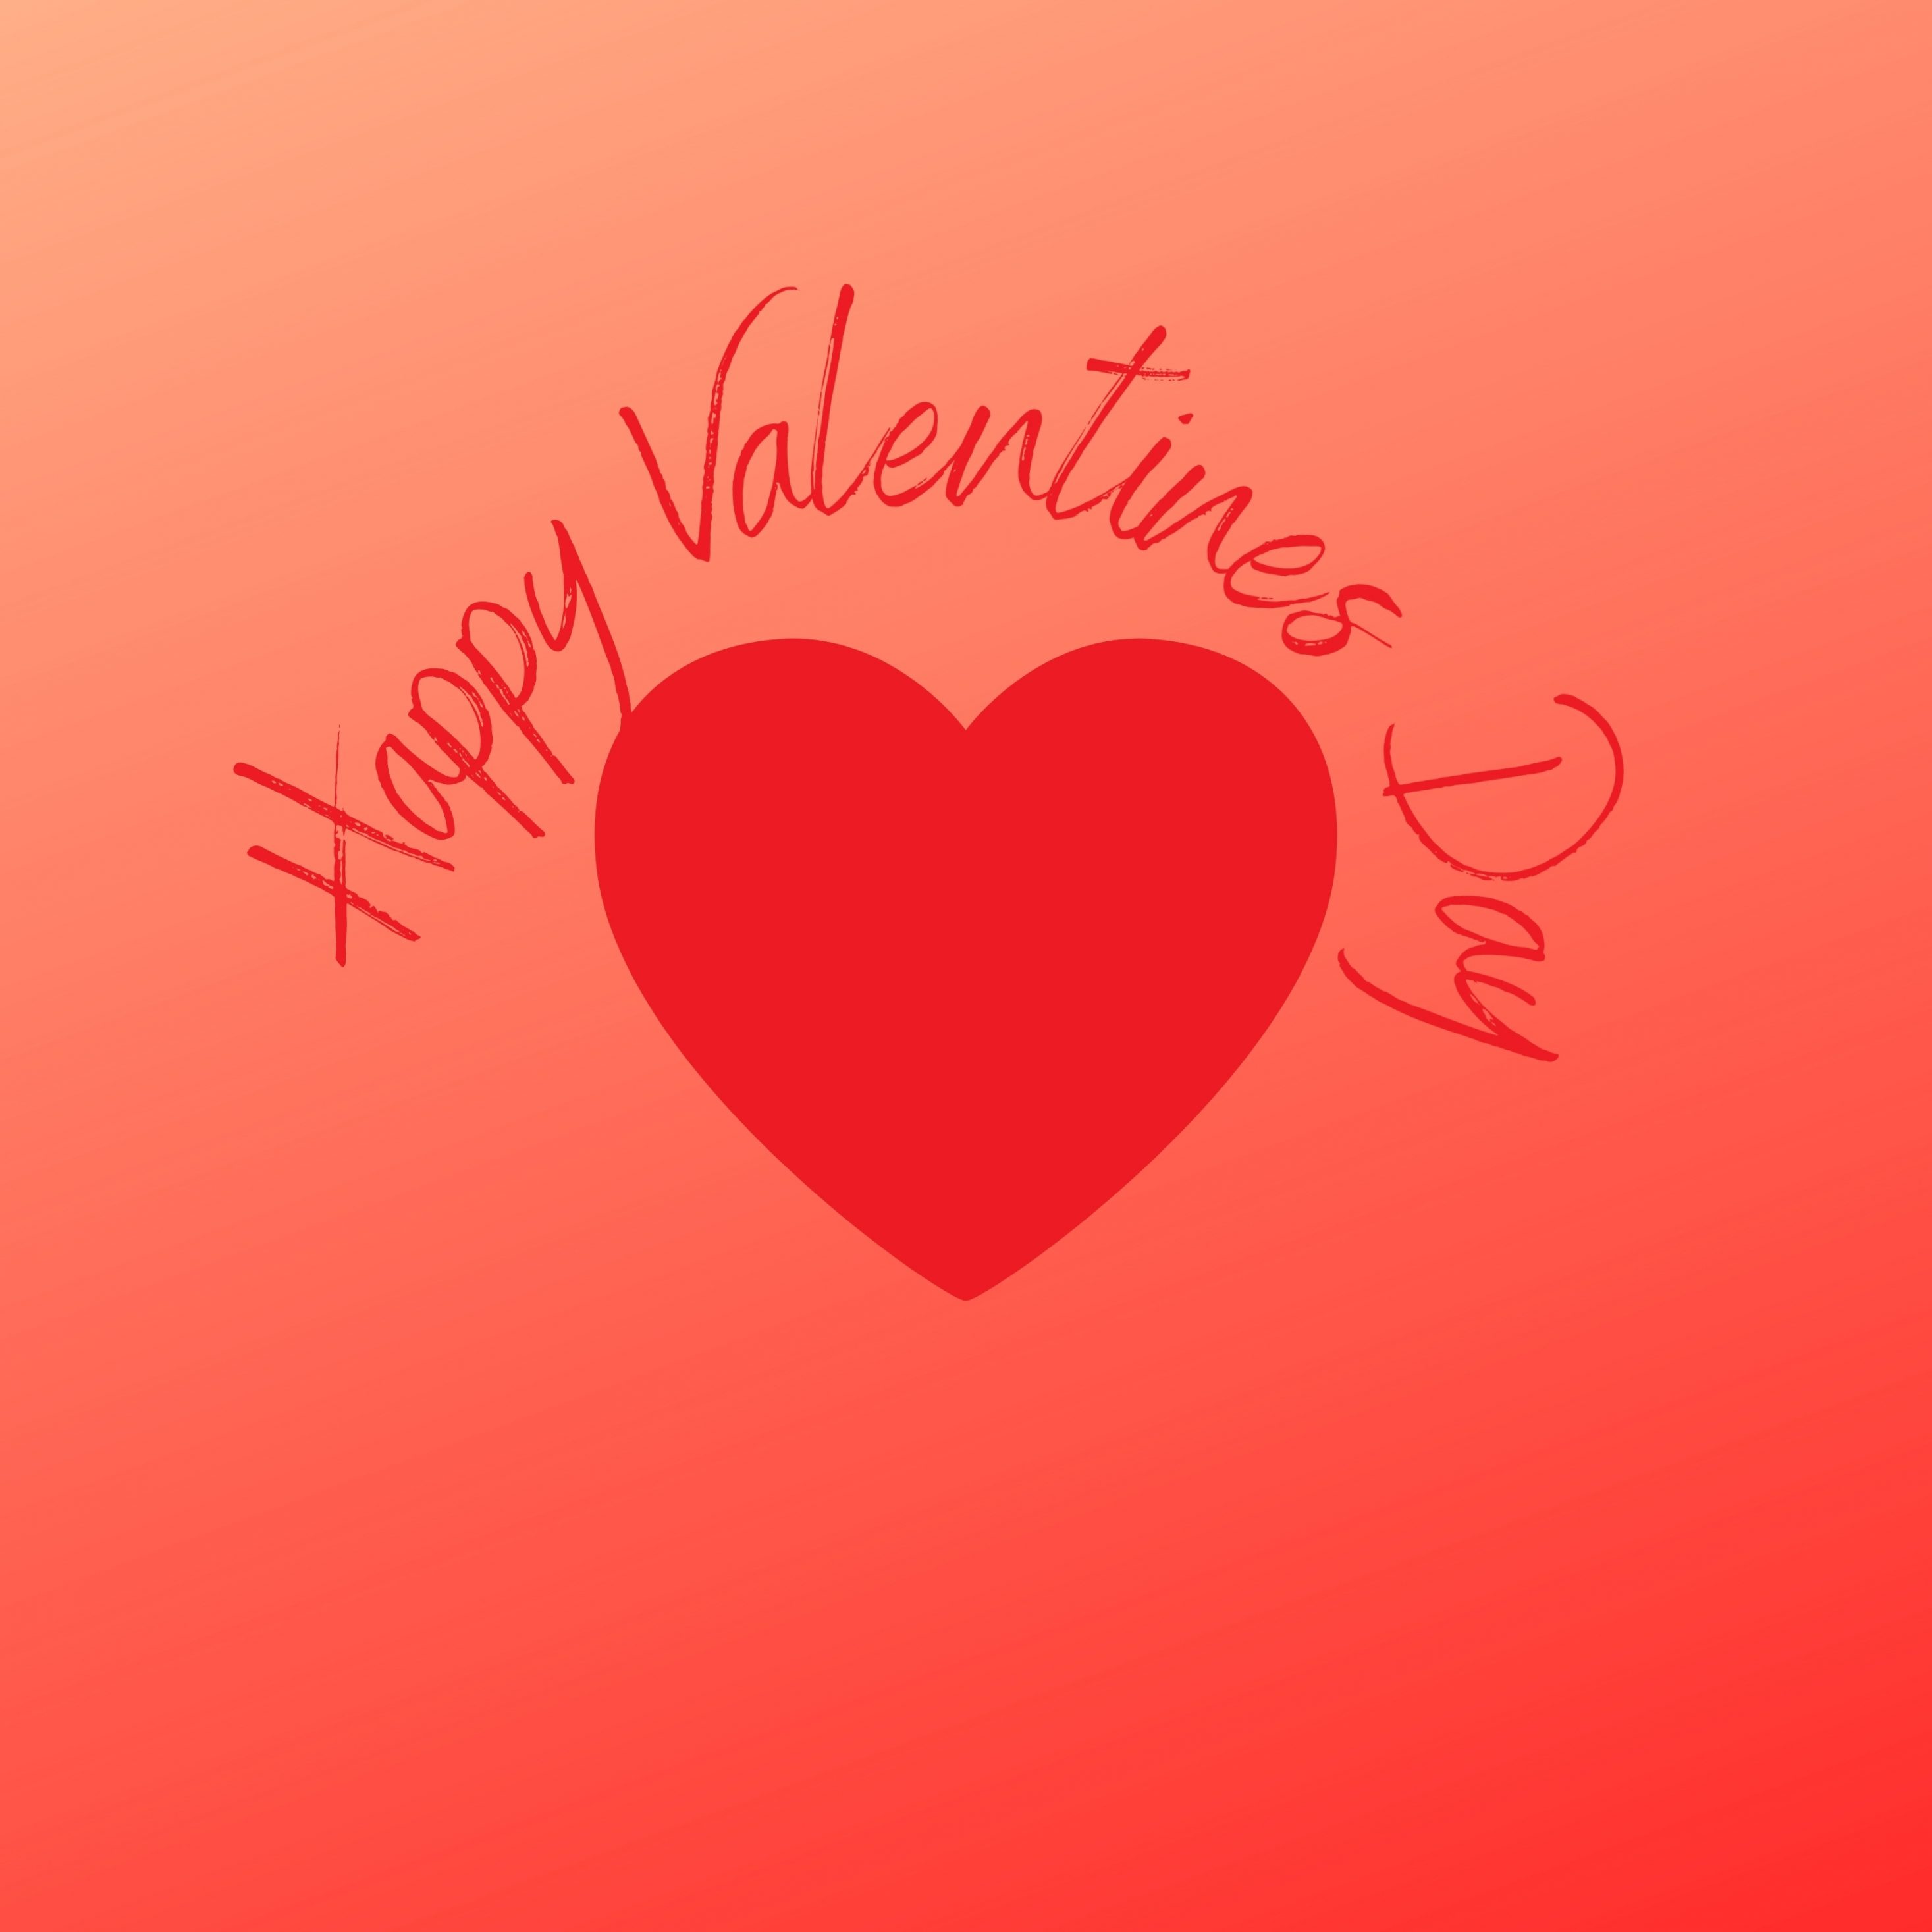 2934x2934 iOS iPad wallpaper 4k 2021 Happy Valentines Day Love Heart iPad Wallpaper 2934x2934 pixels resolution